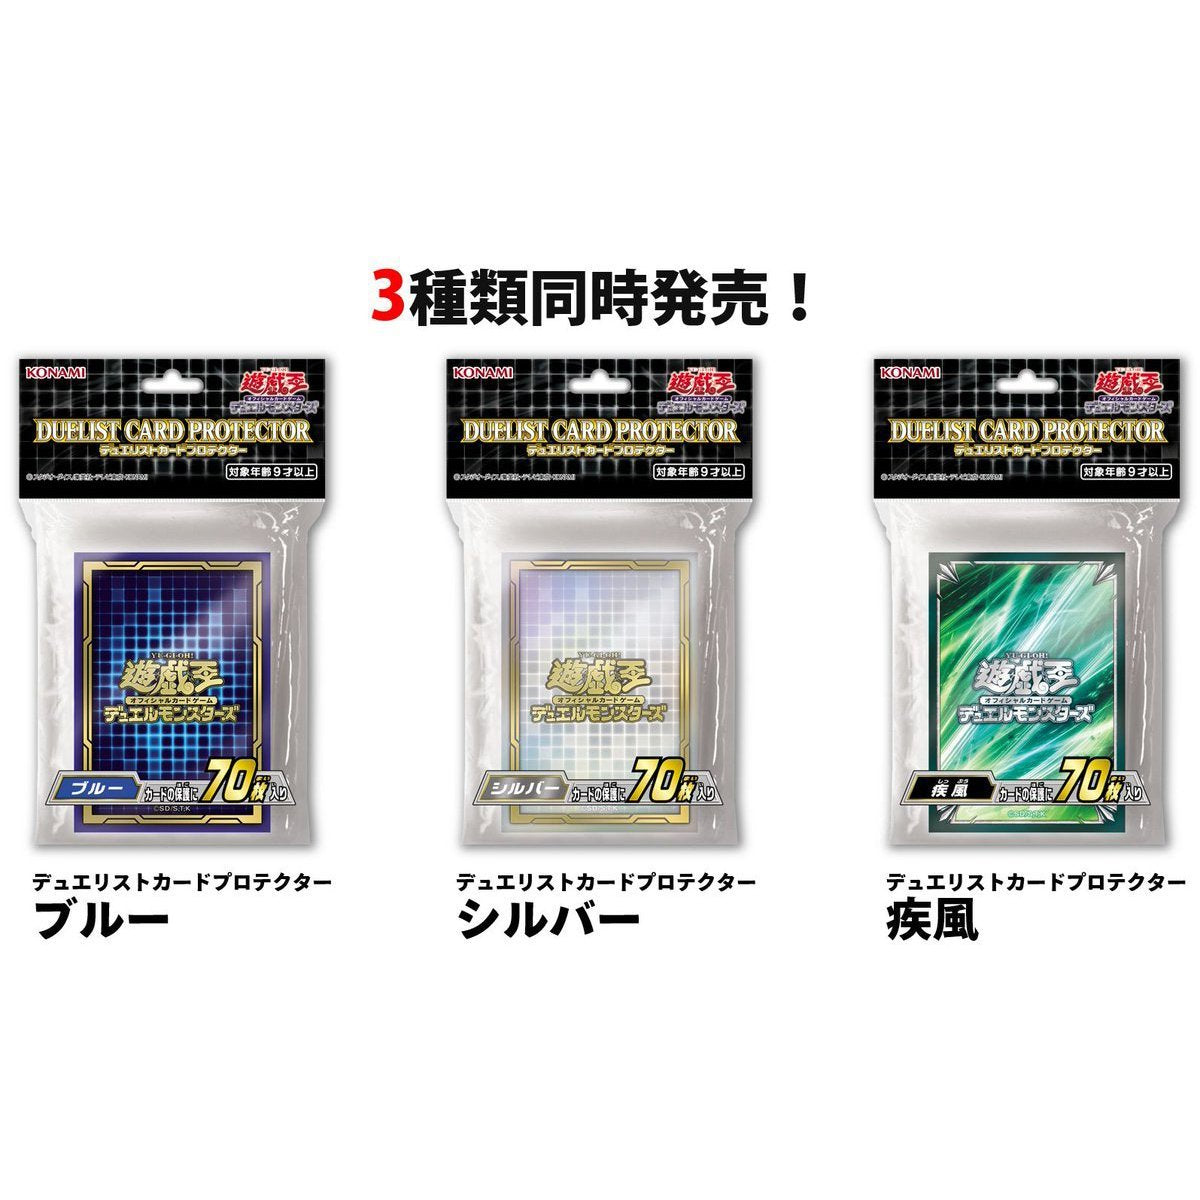 Yu-Gi-Oh! OCG Duelist Card Protector "Blue" (CG1731)-Konami-Ace Cards & Collectibles